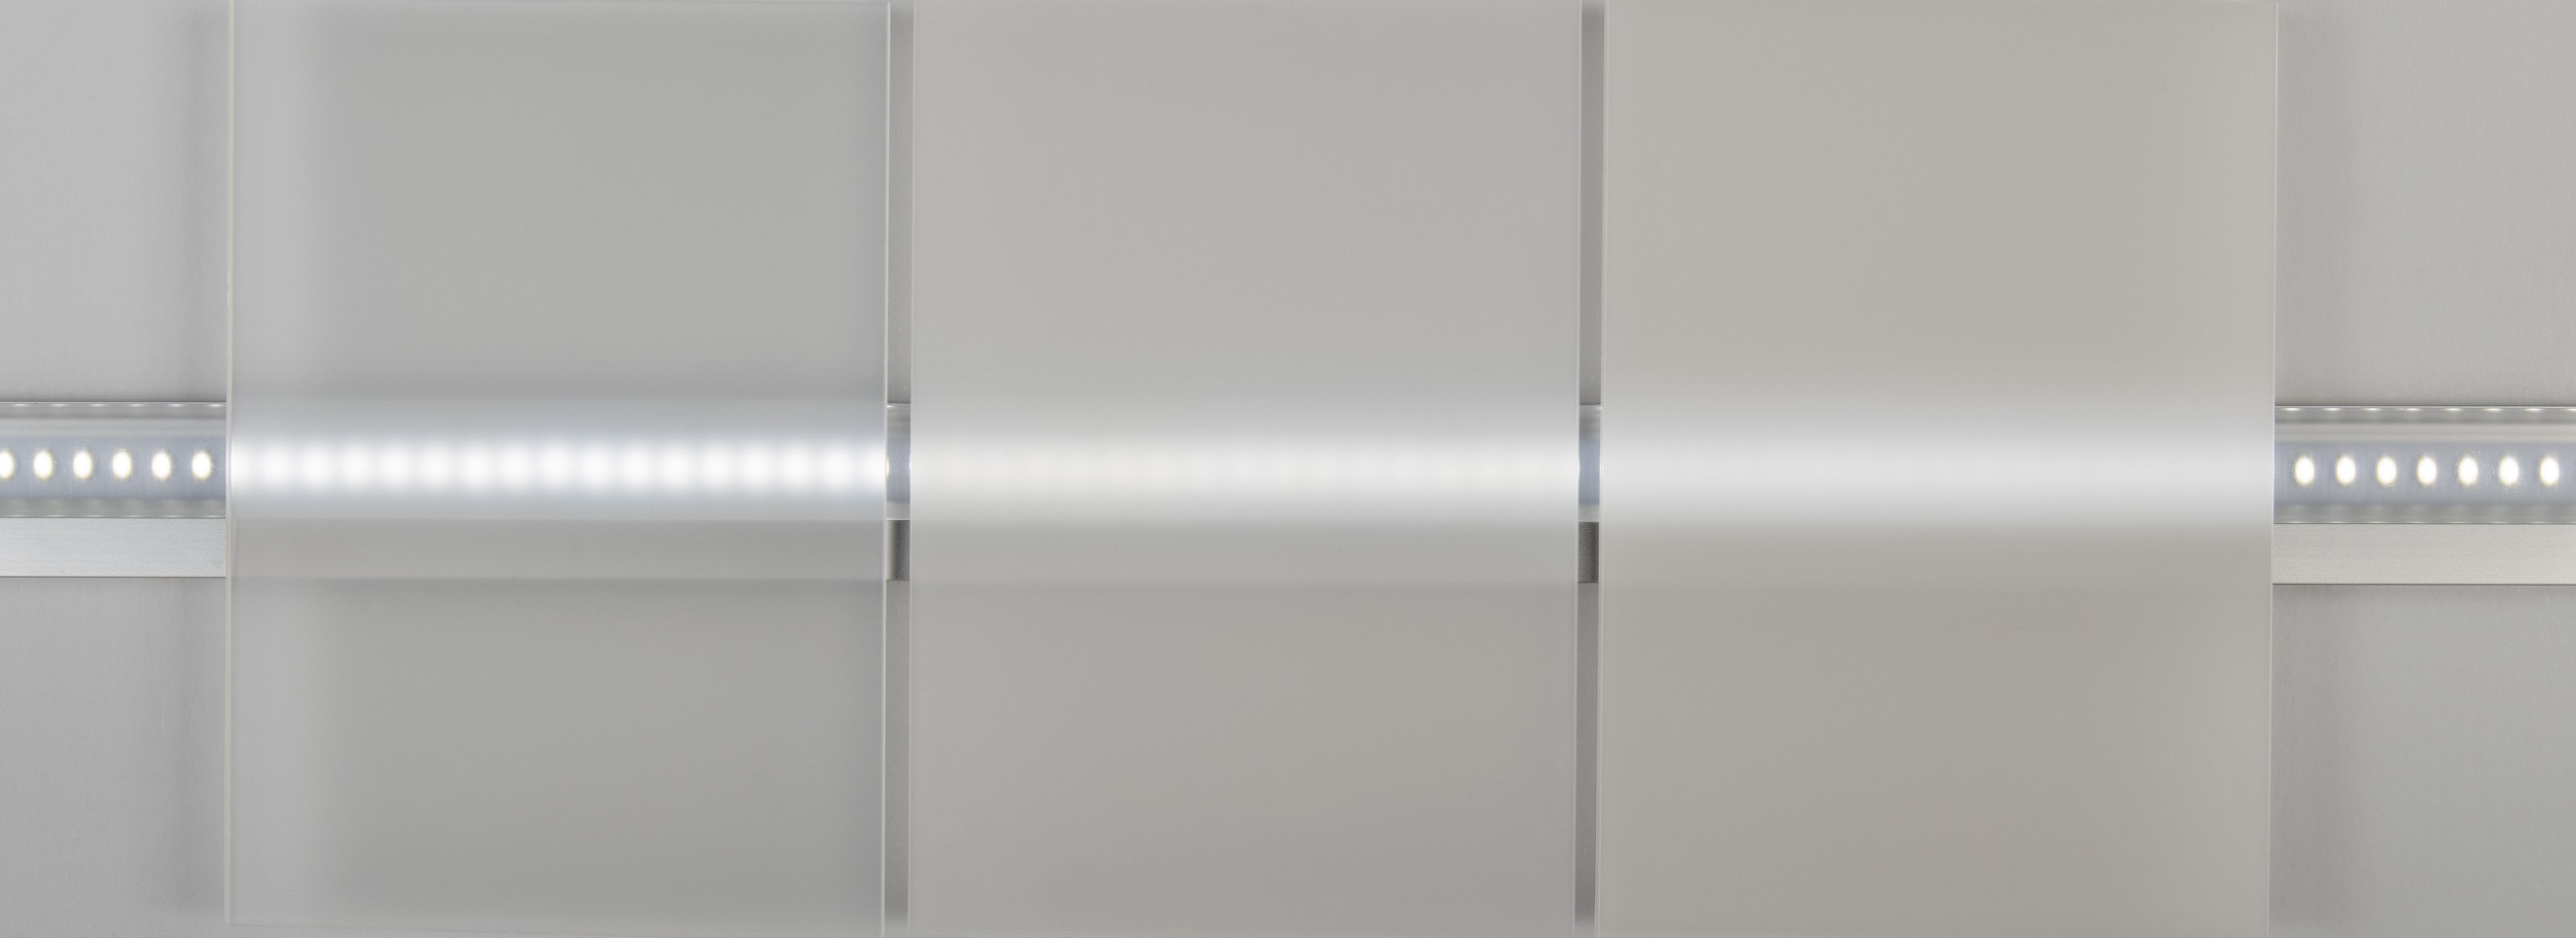 Diffusorfolie für LED-Anwendungen: Makrofol, Lexan-Folie und Polyesterfolie  - openPR